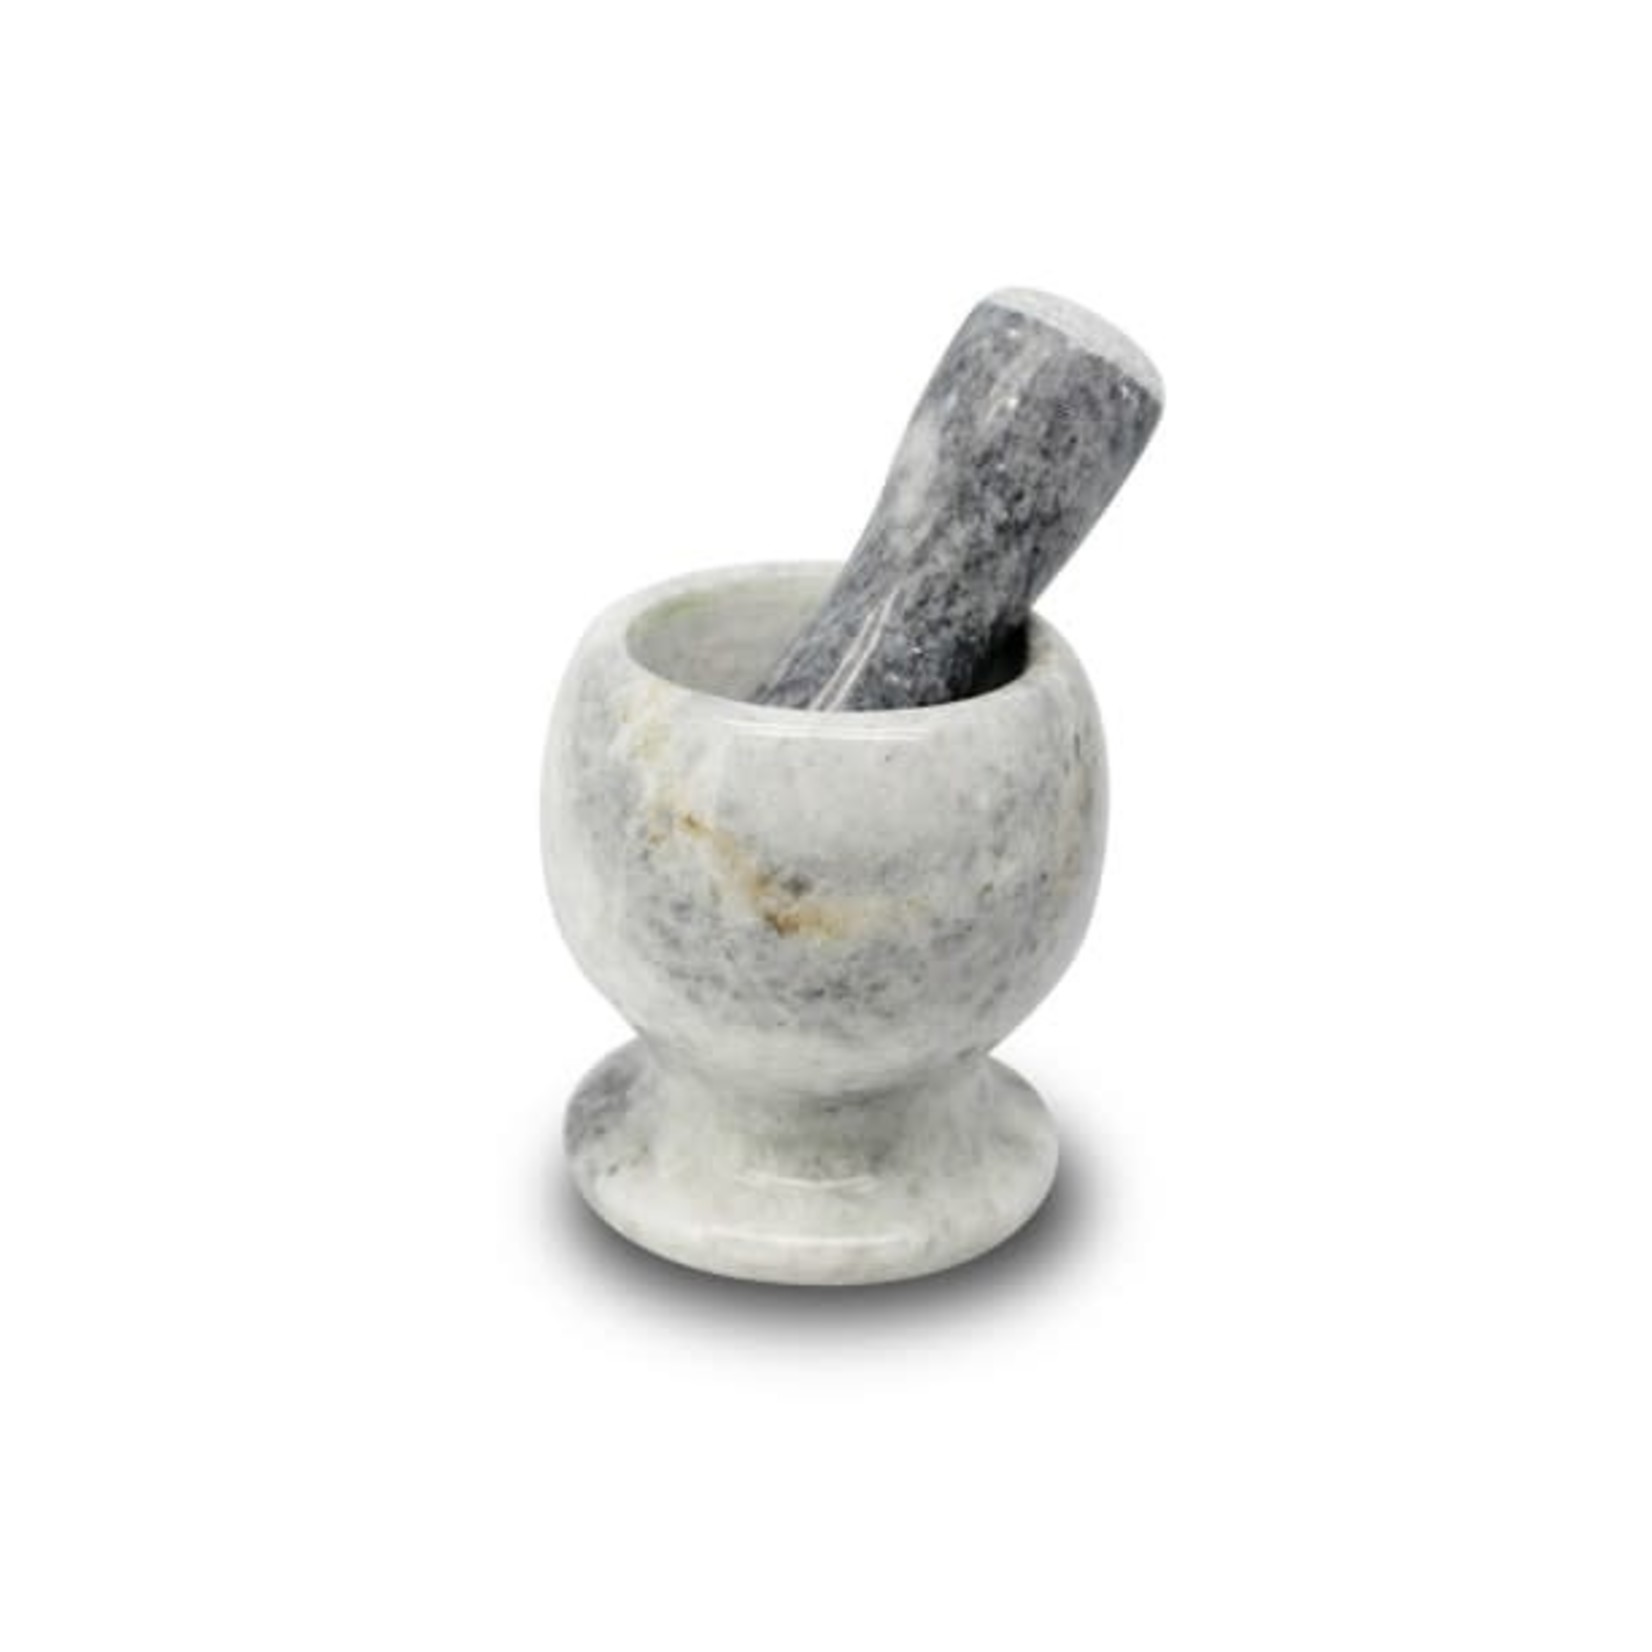 EMF EMF Mortar & Pestle - Grey Marble